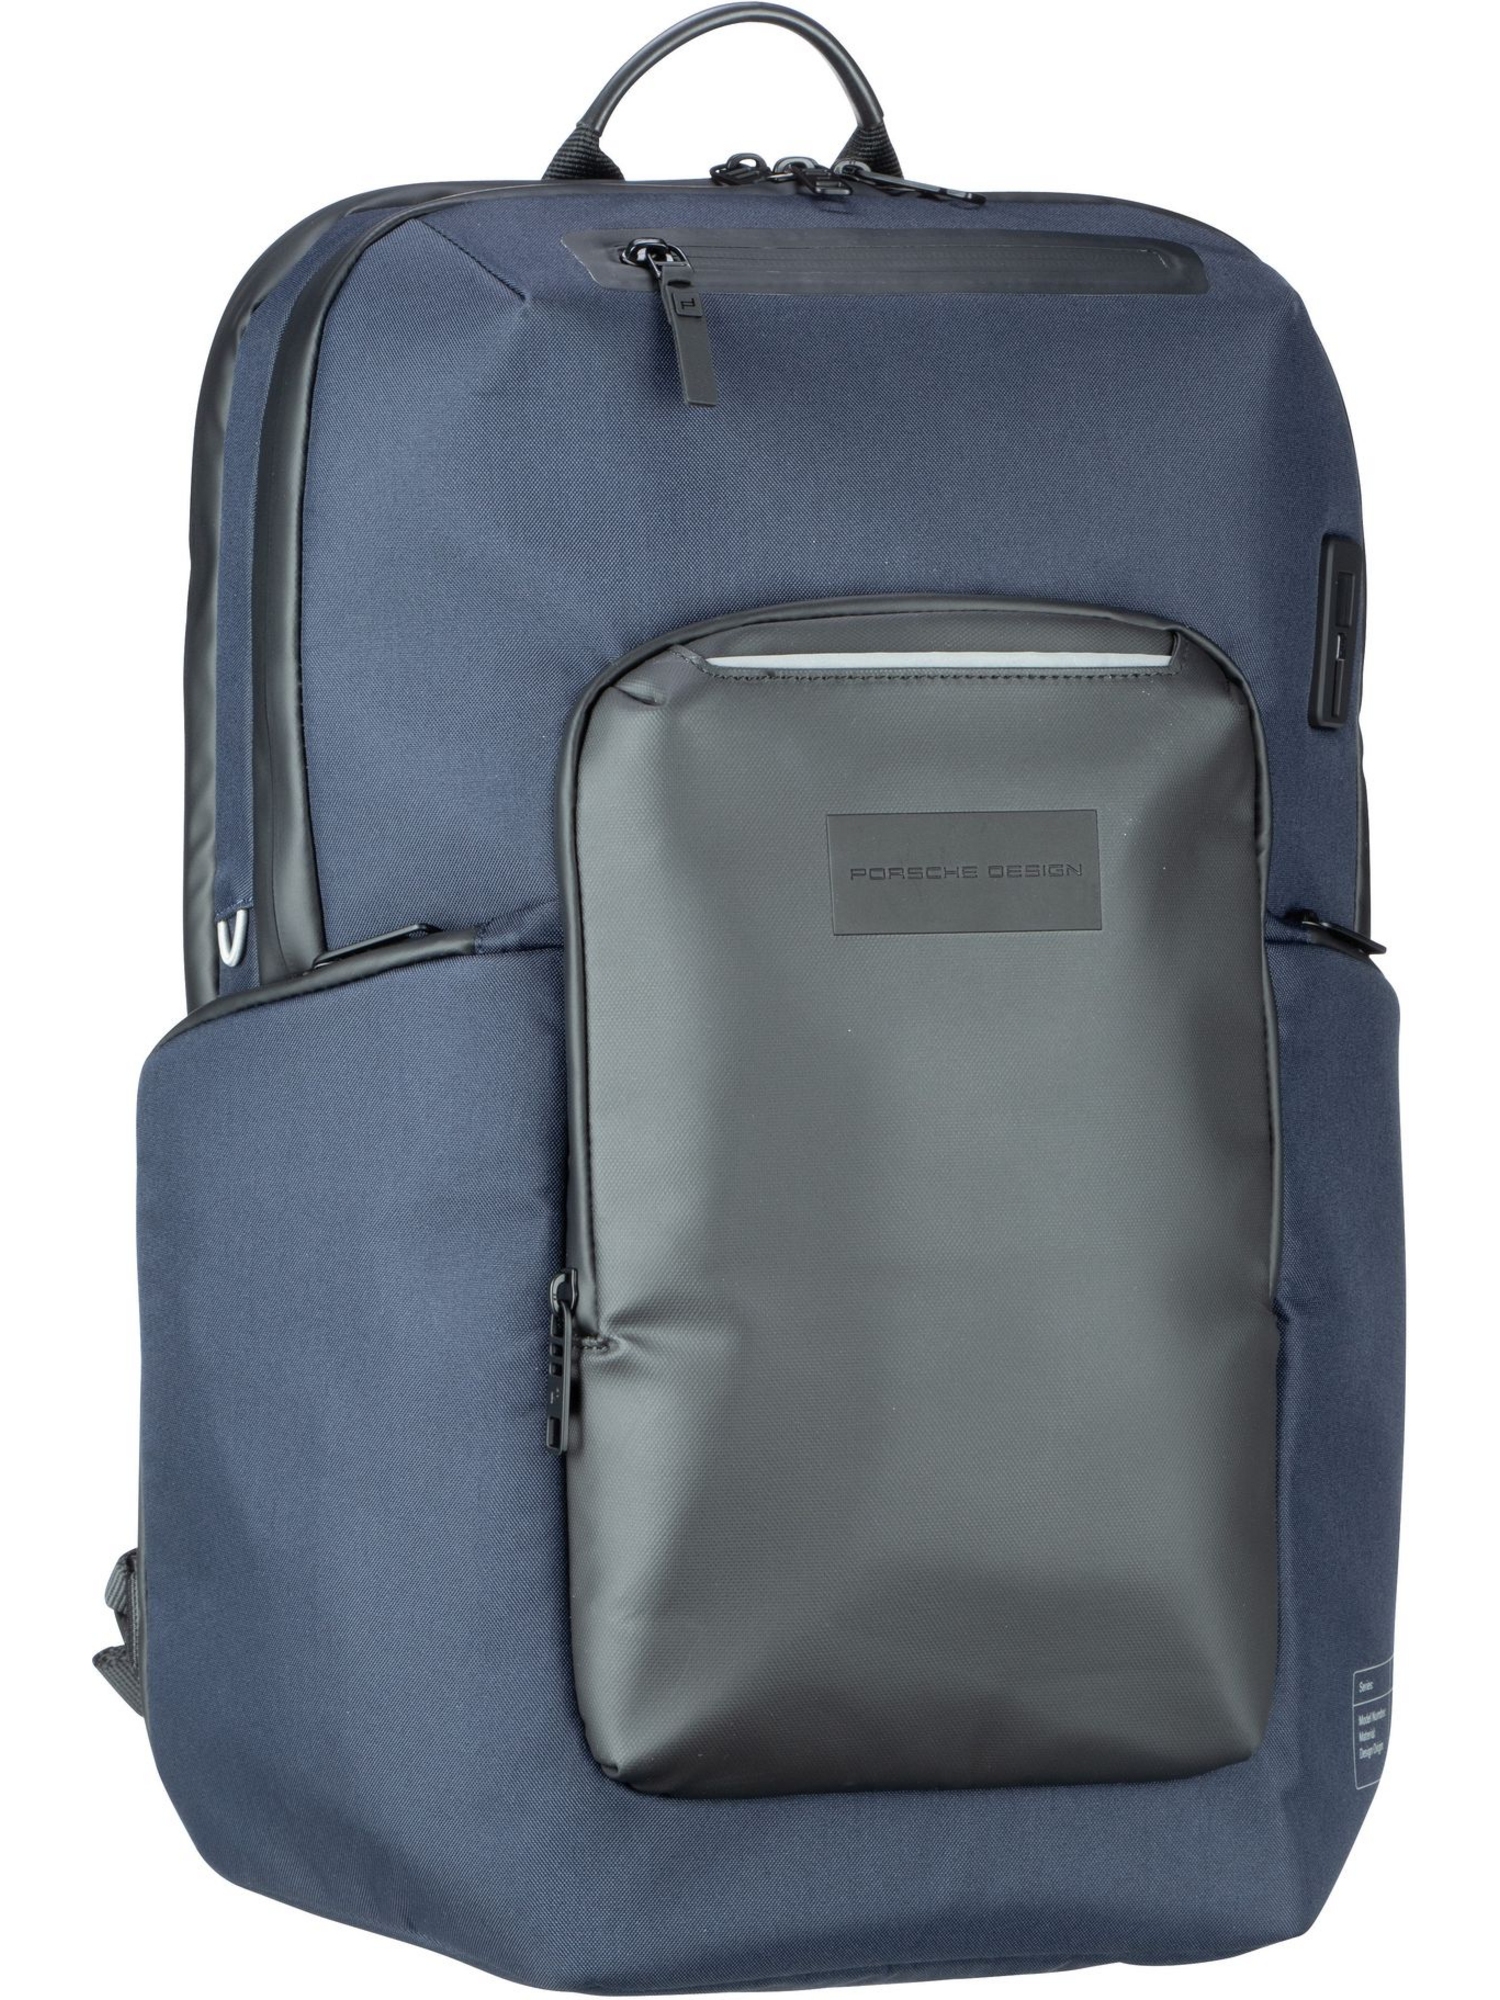 Рюкзак Porsche Design Laptop Urban Eco Backpack M2, темно синий цена и фото